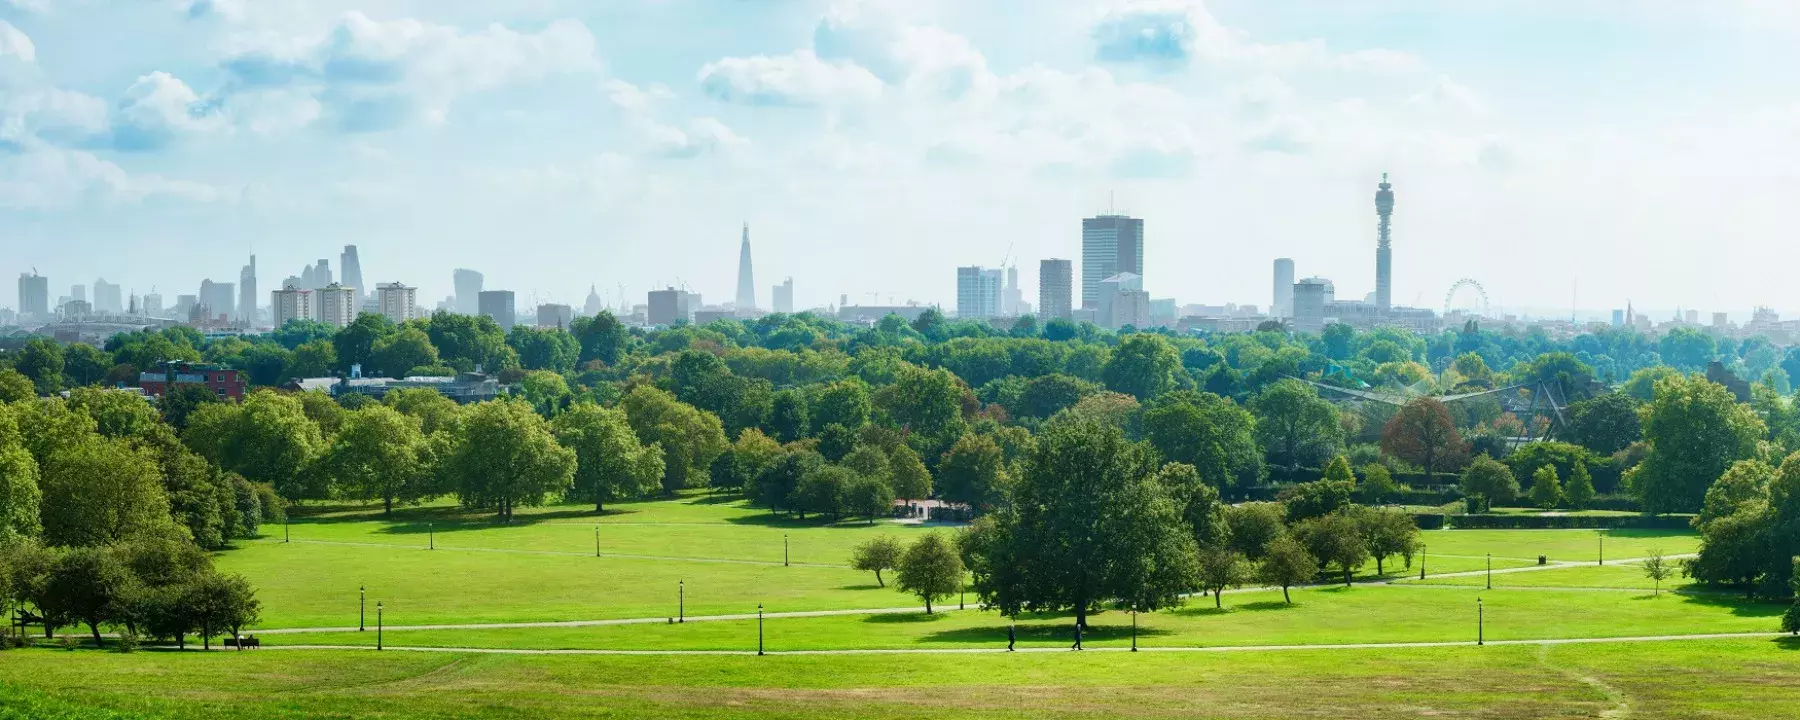 london-park-skyline-1800*720.jpg